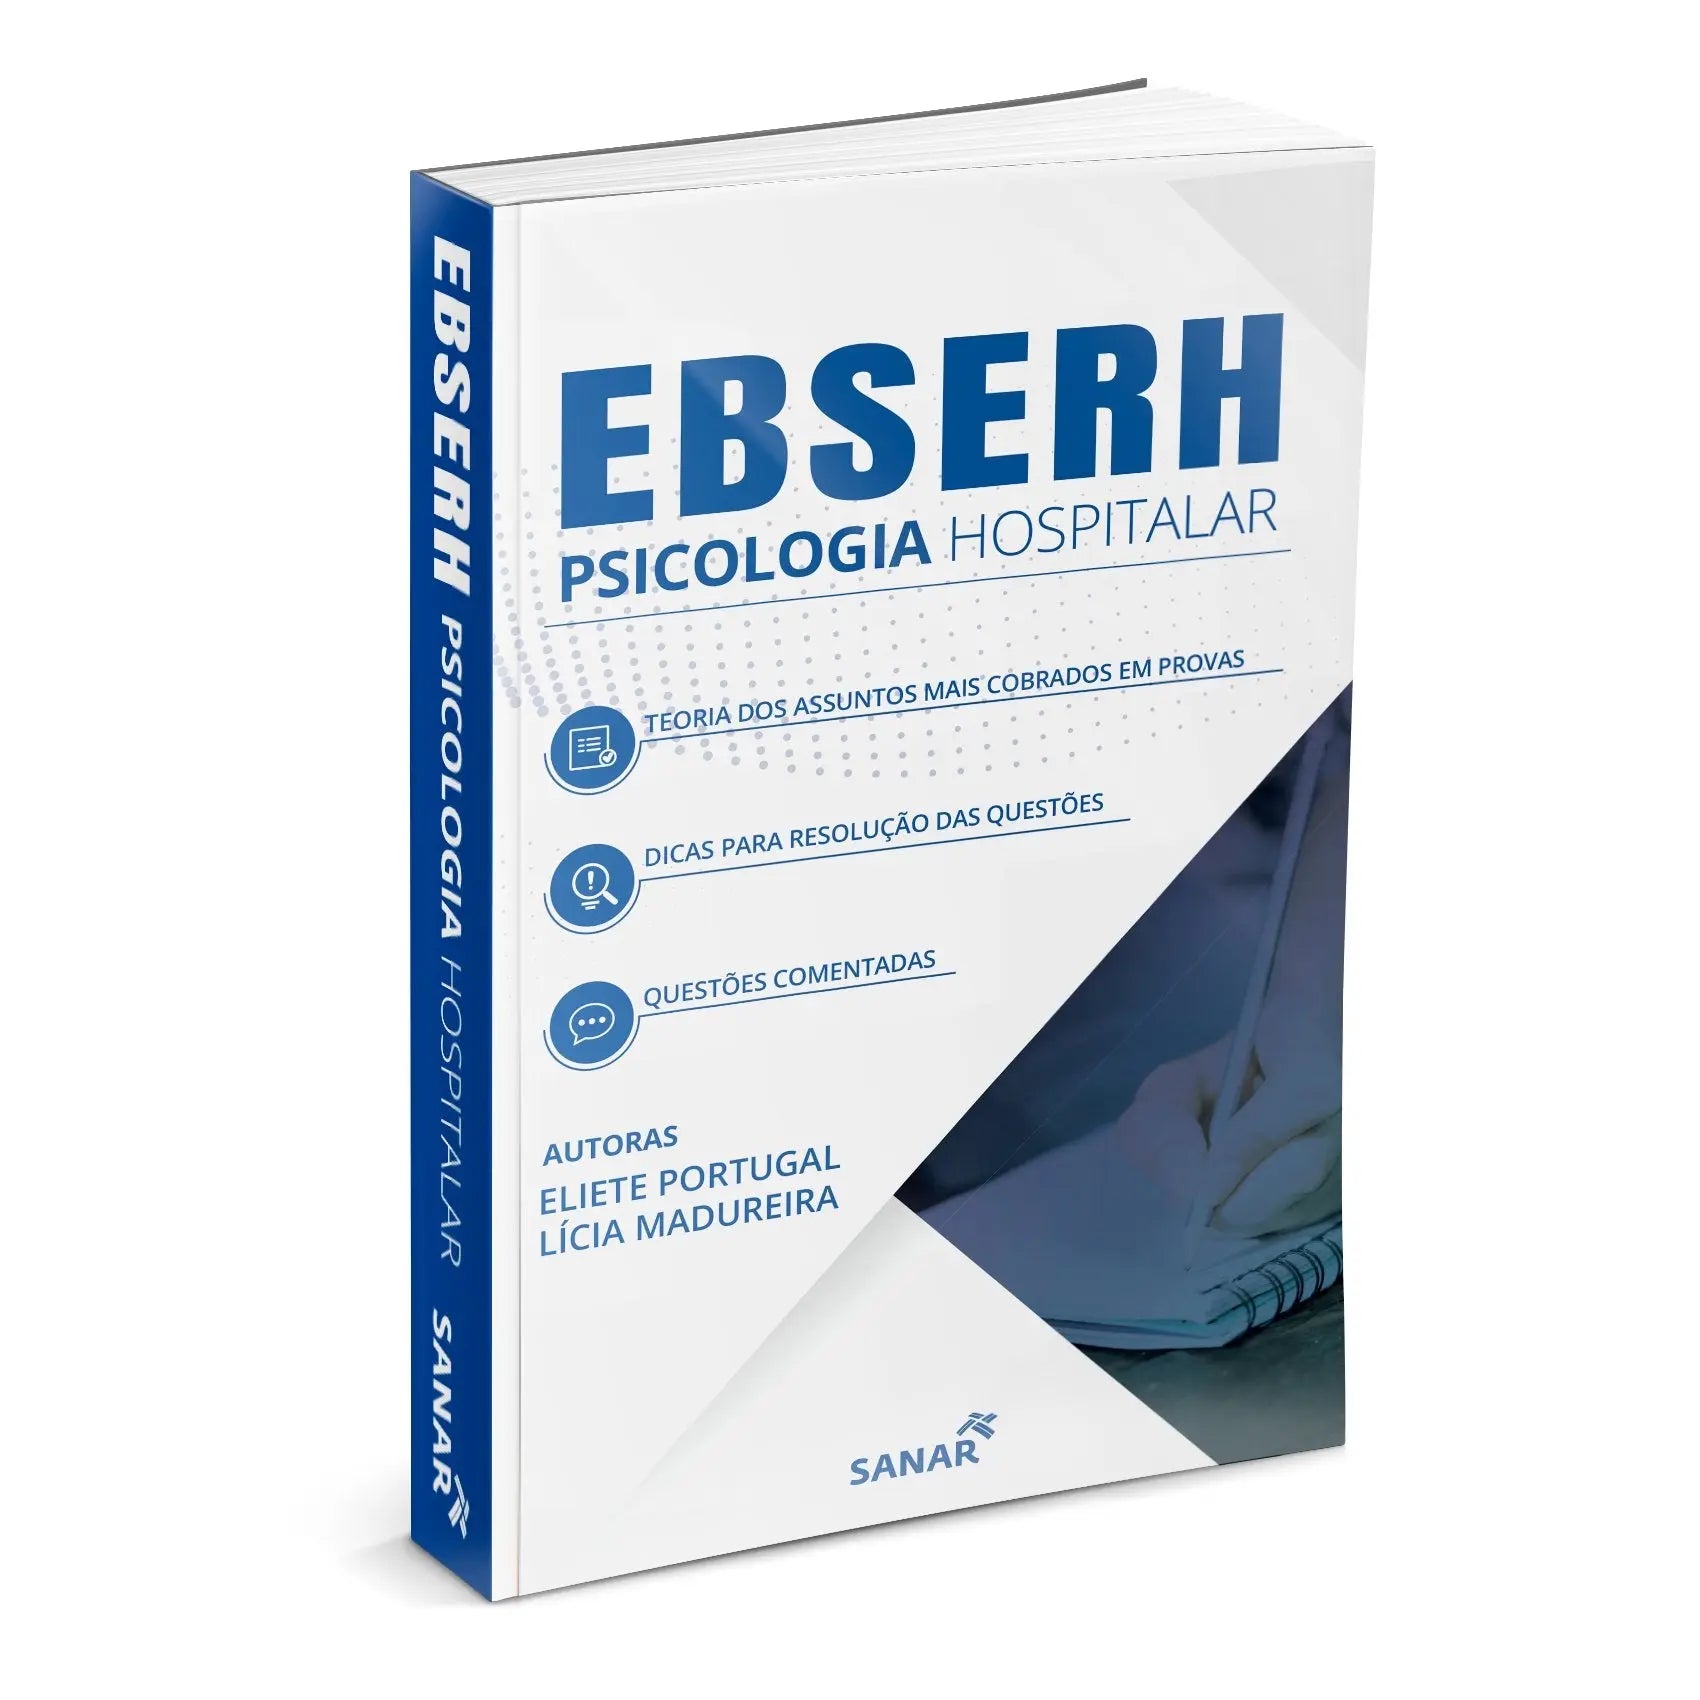 Imagem do livro EBSERH Psicologia Hospitalar